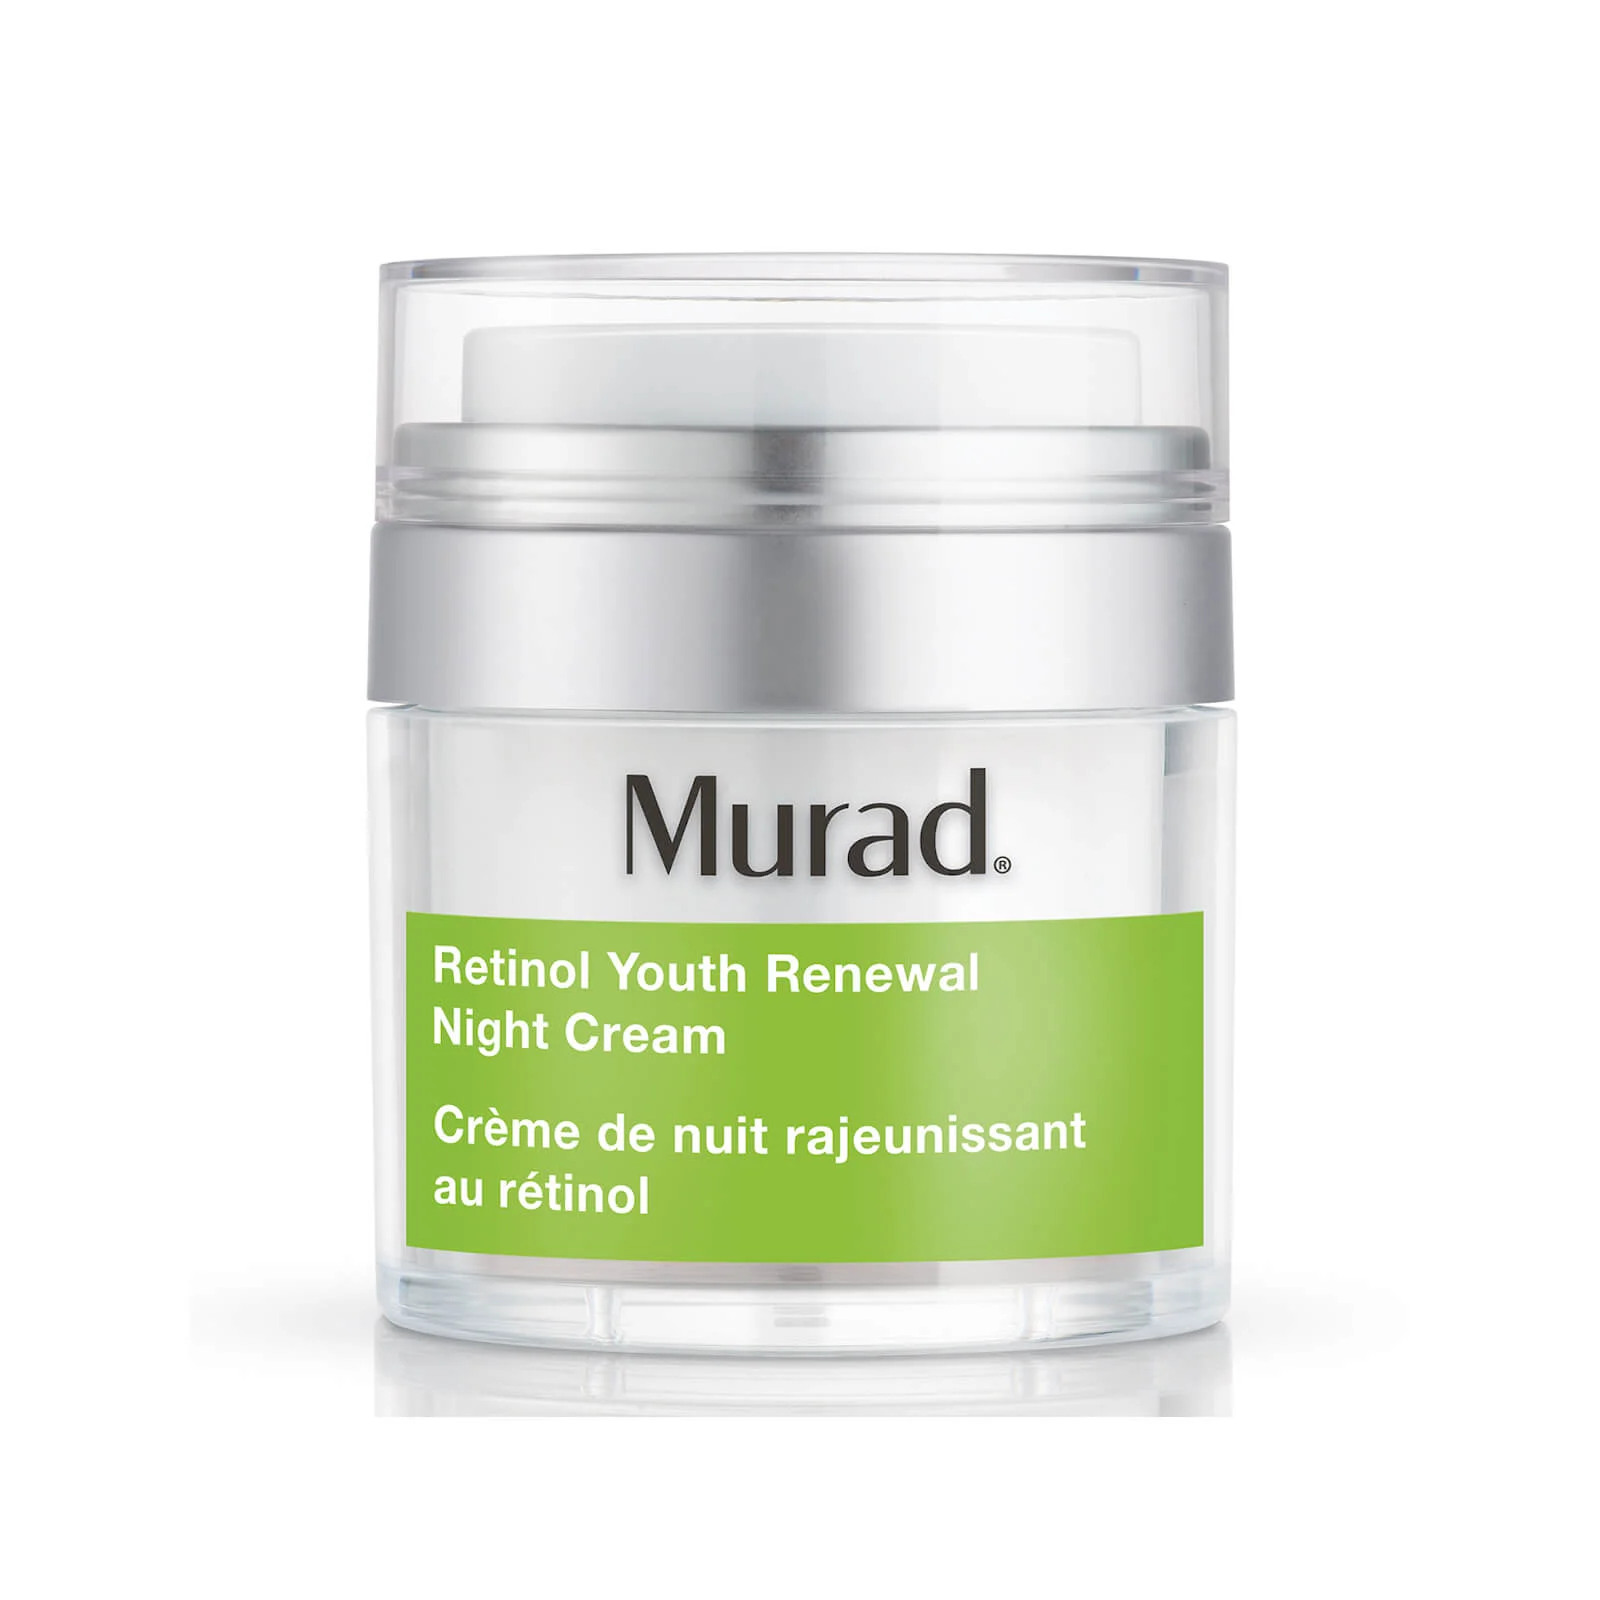 Murad Retinol Youth Renewal Night Cream 50g Image 1